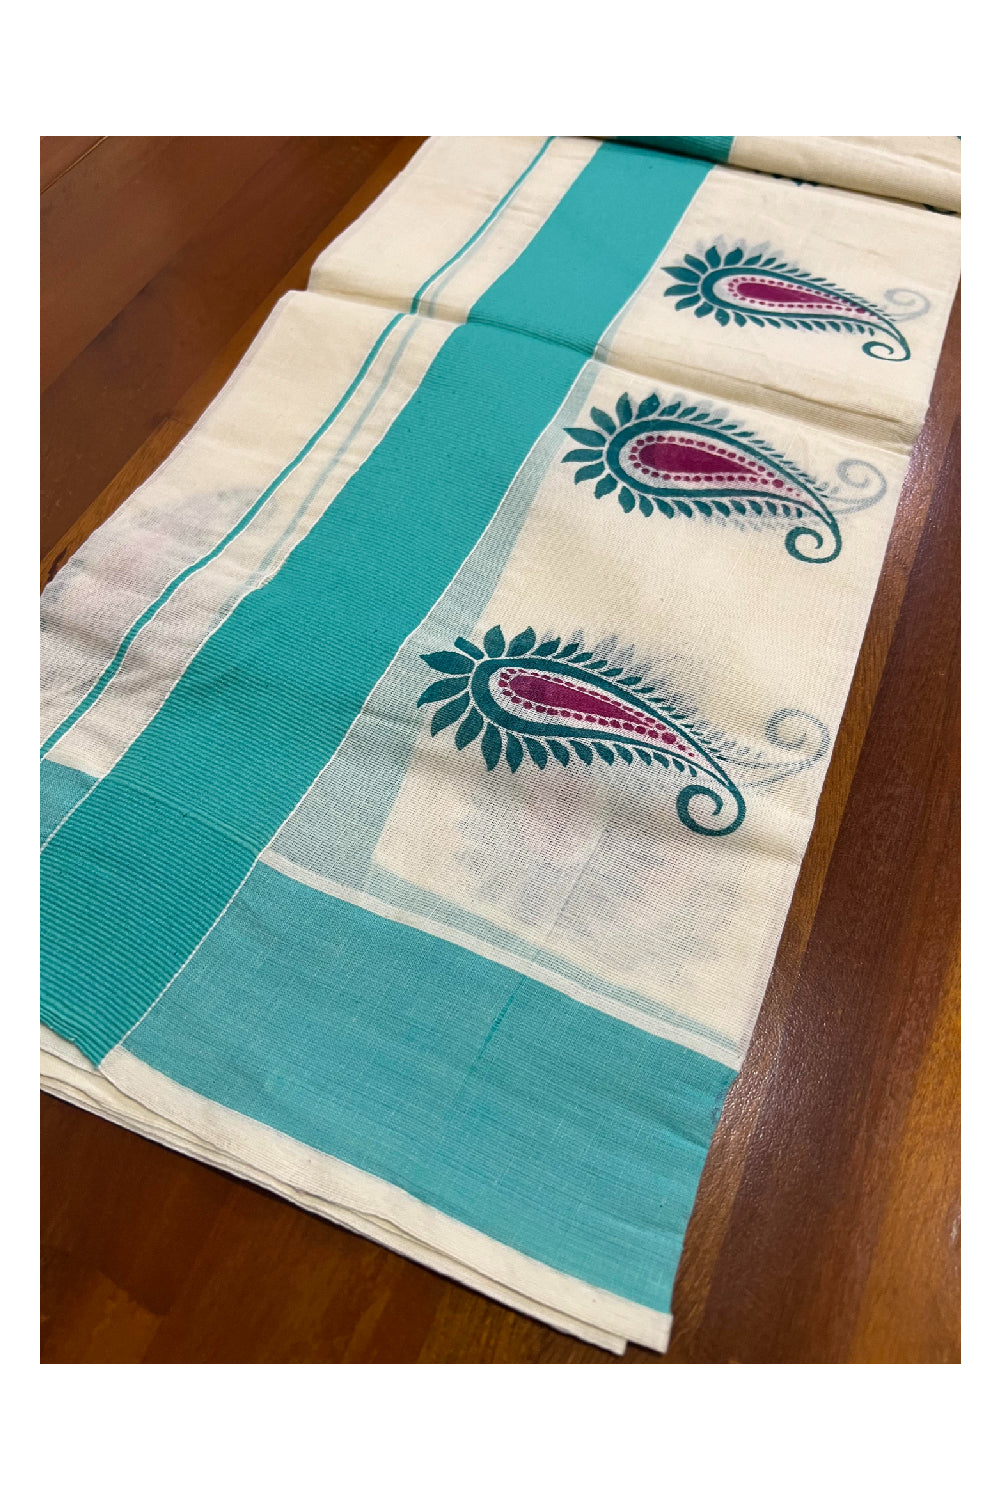 Kerala Cotton Single Mundum Neriyathum (Set Mundu) with Block Prints on Turquoise Border 2.80 Mtrs